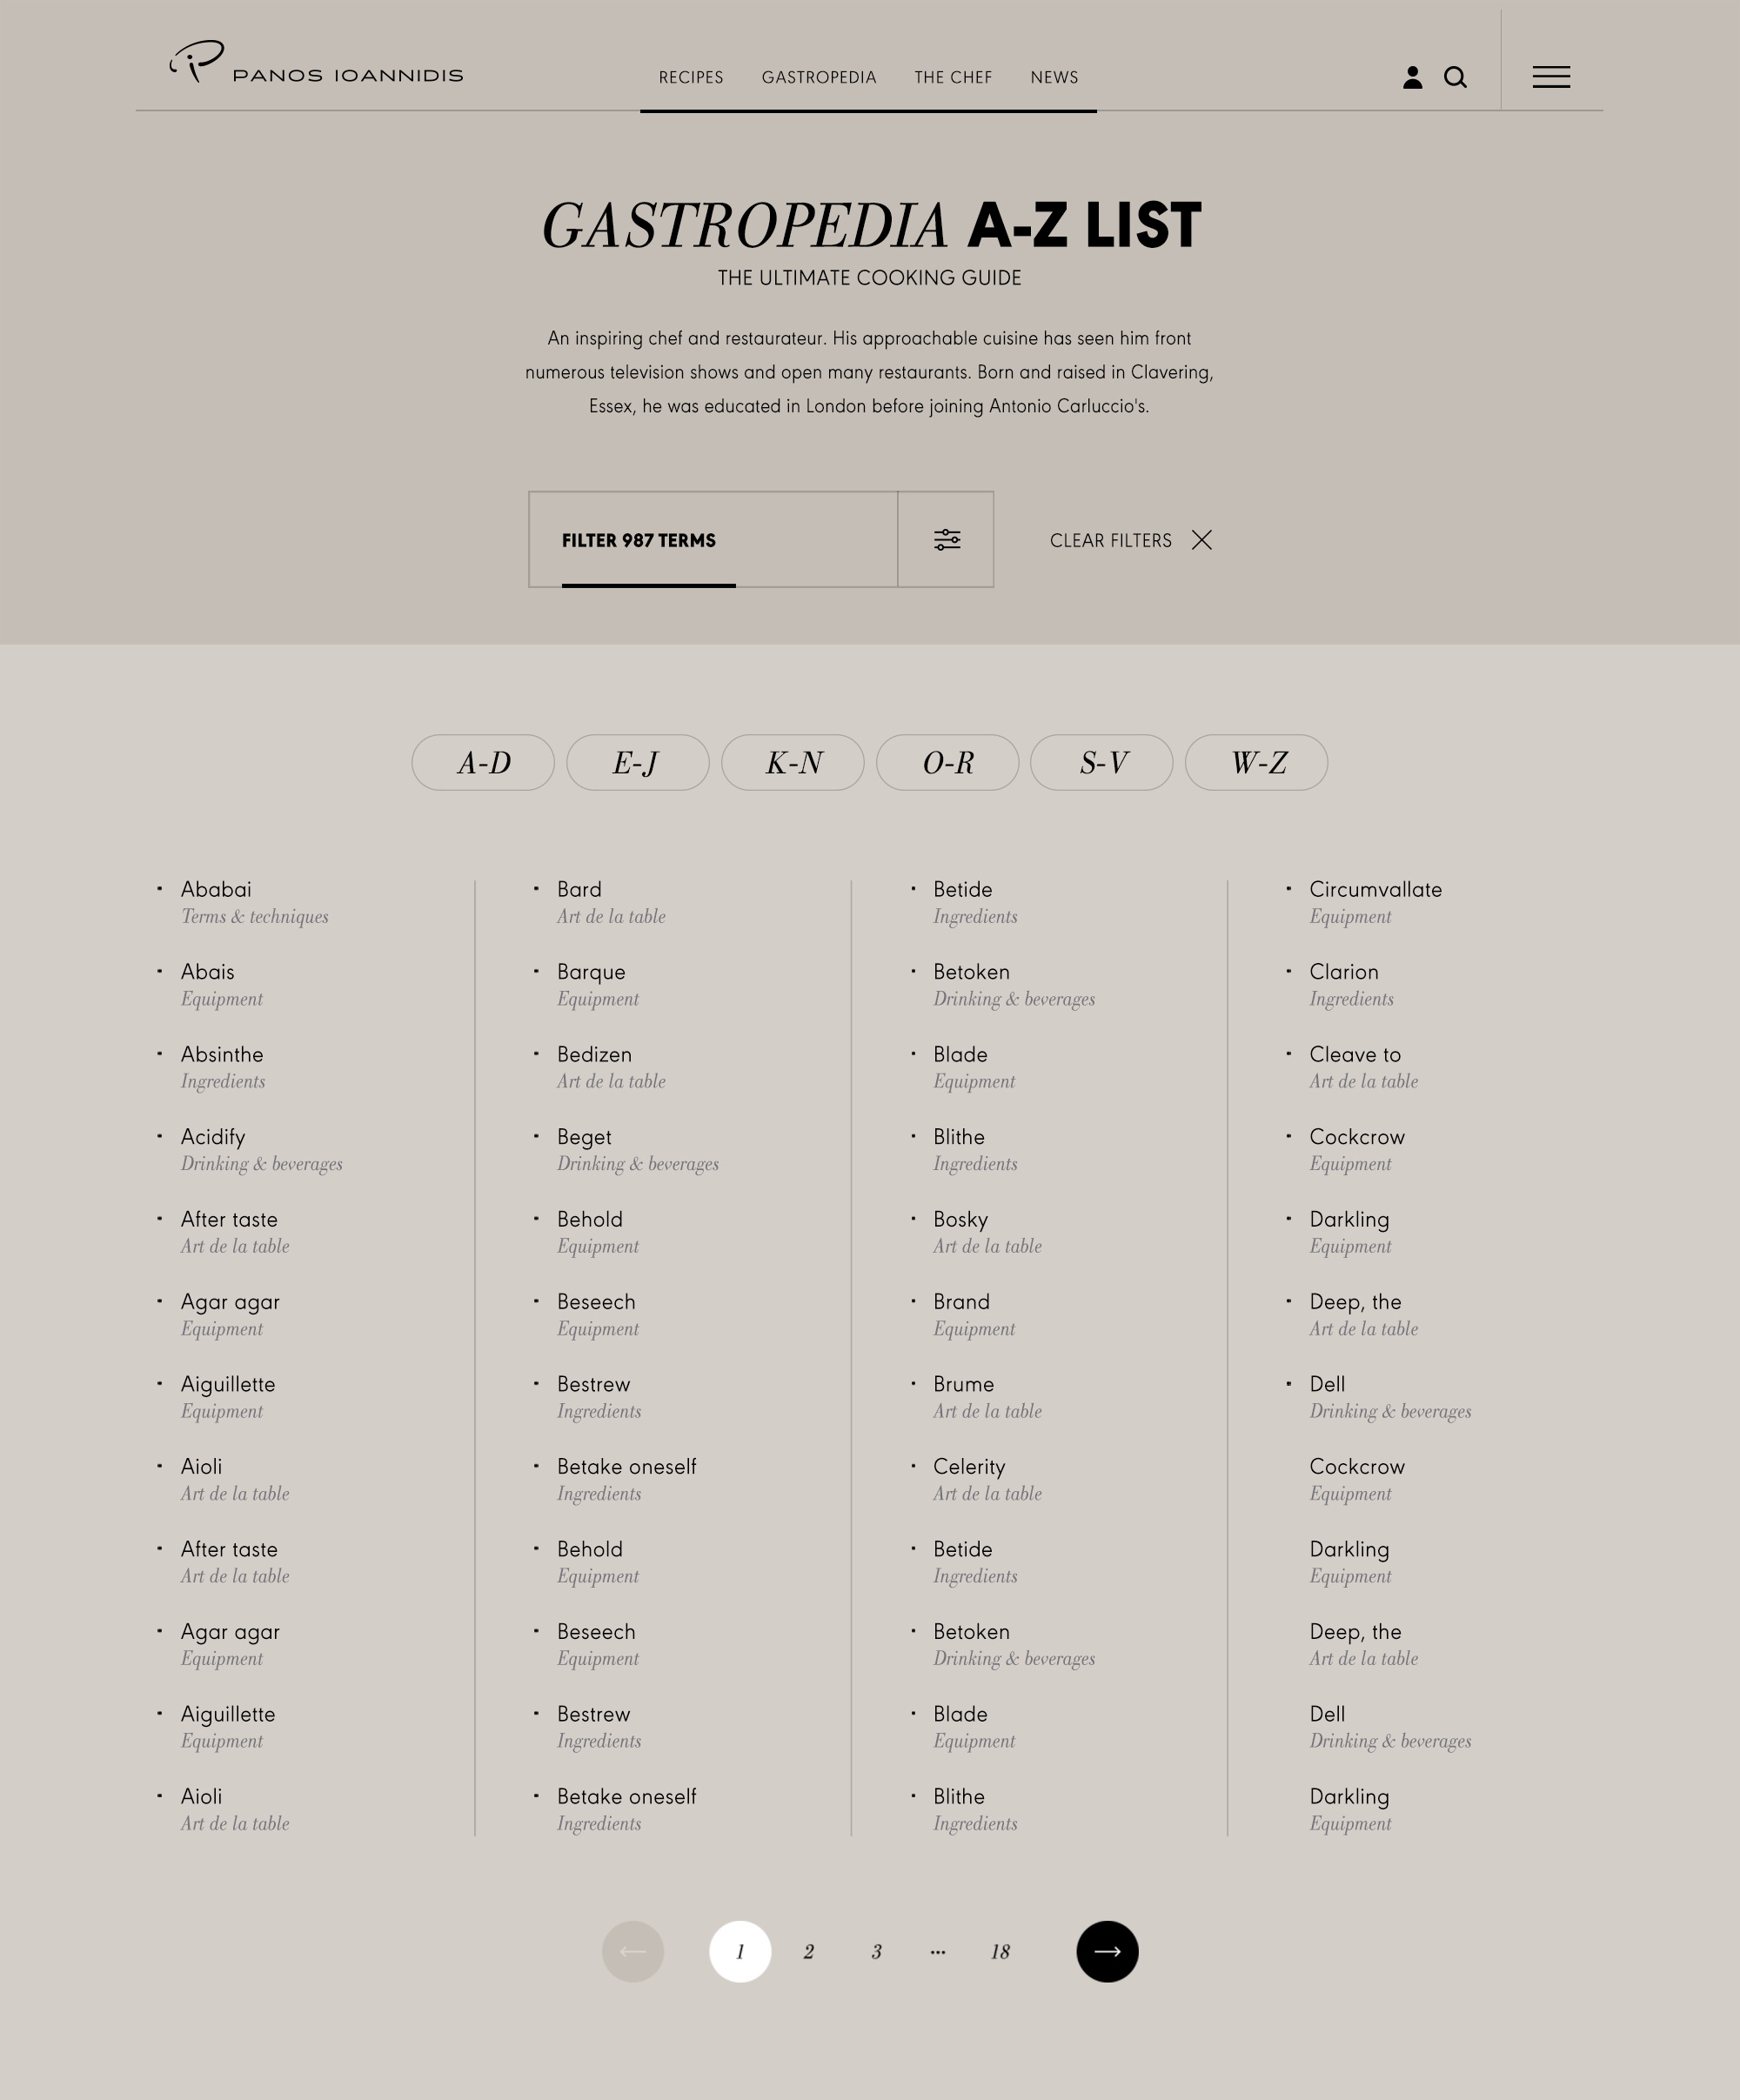 panos ioannidis website design gastropedia list kommigraphics